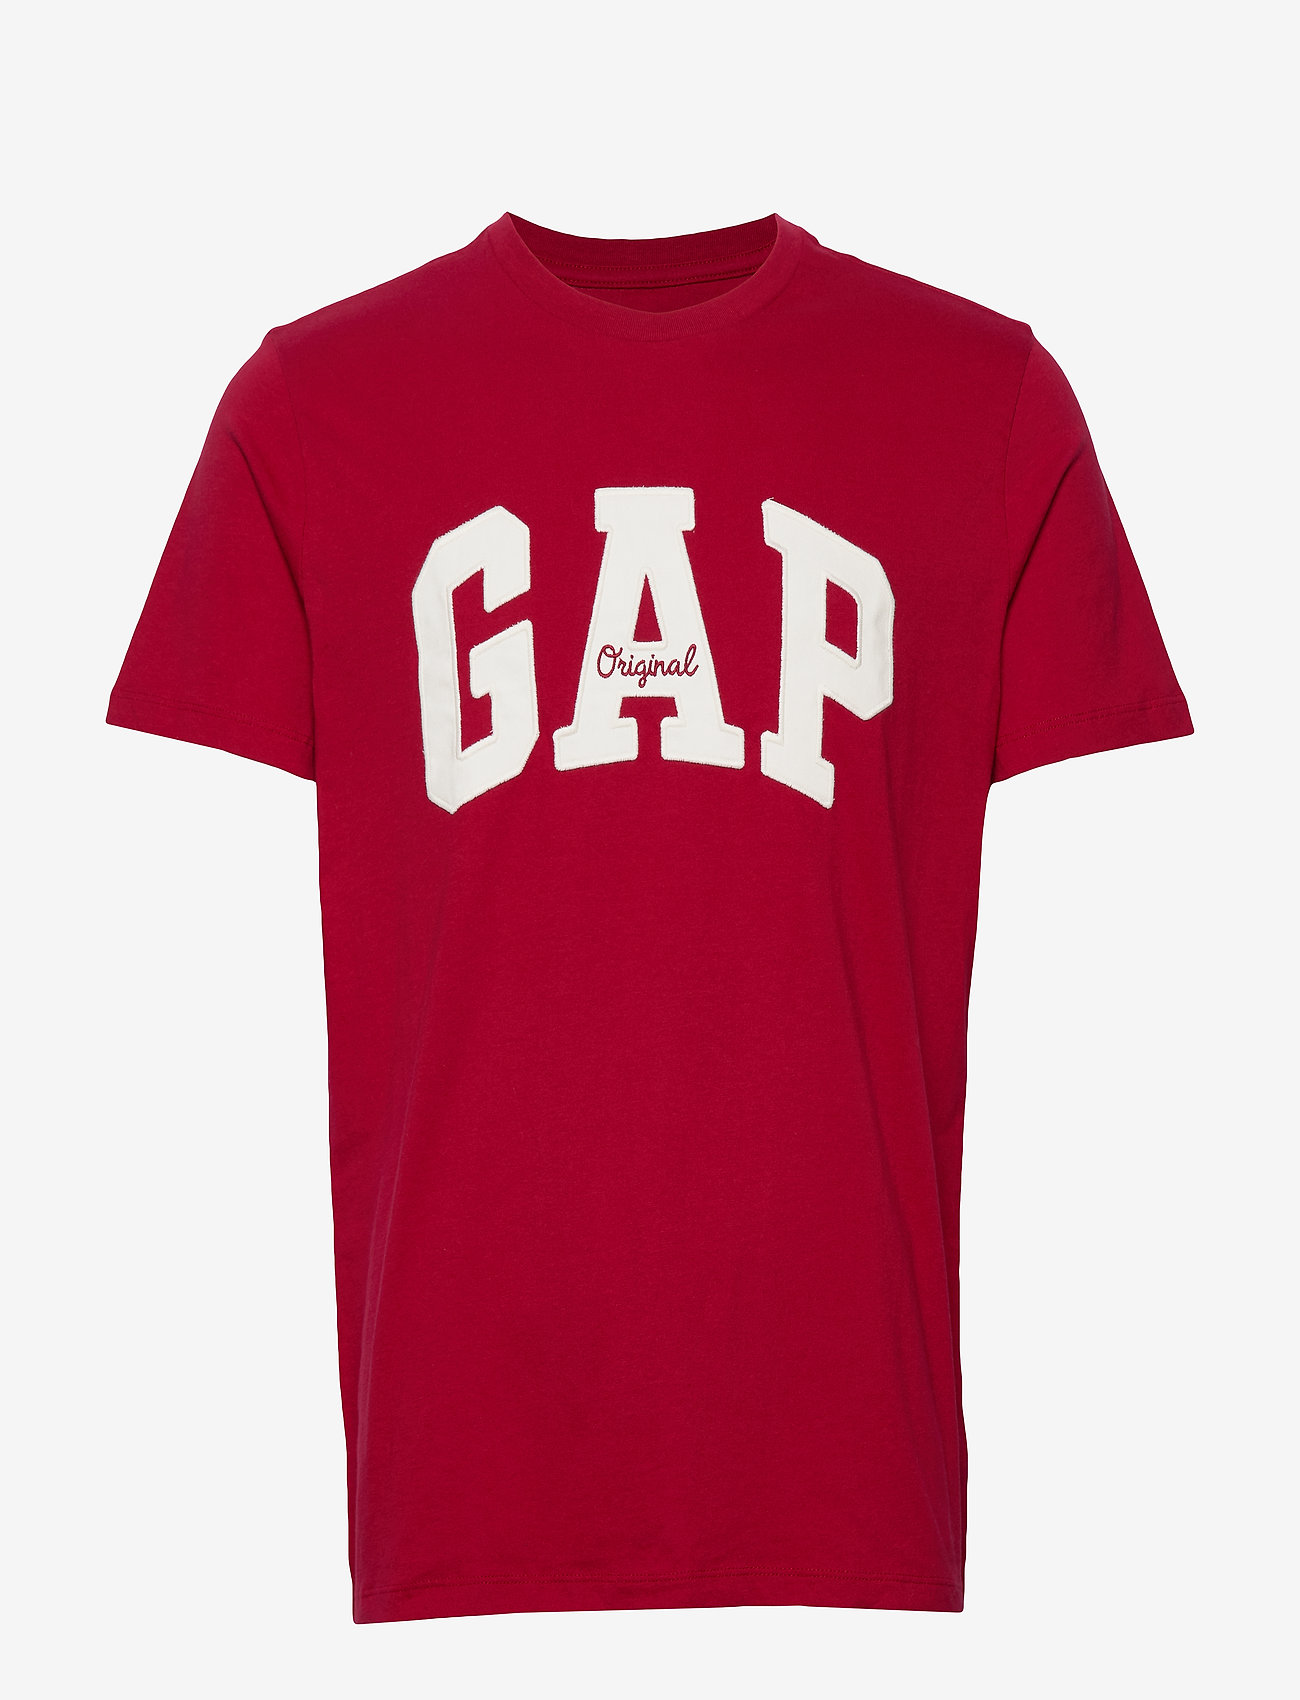 gap shirt